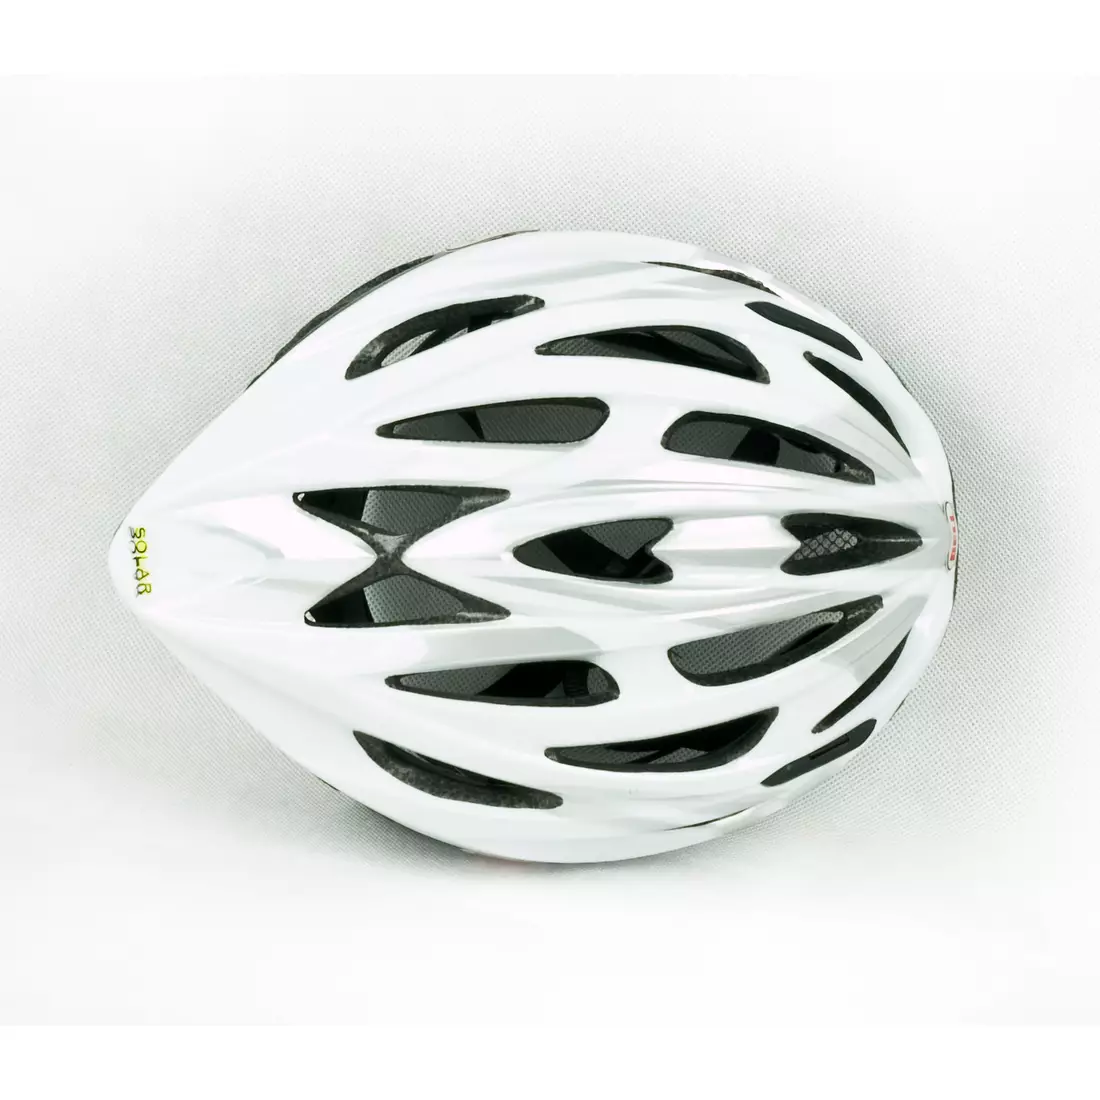 BELL SOLAR – Fahrradhelm, weiß und silberfarben